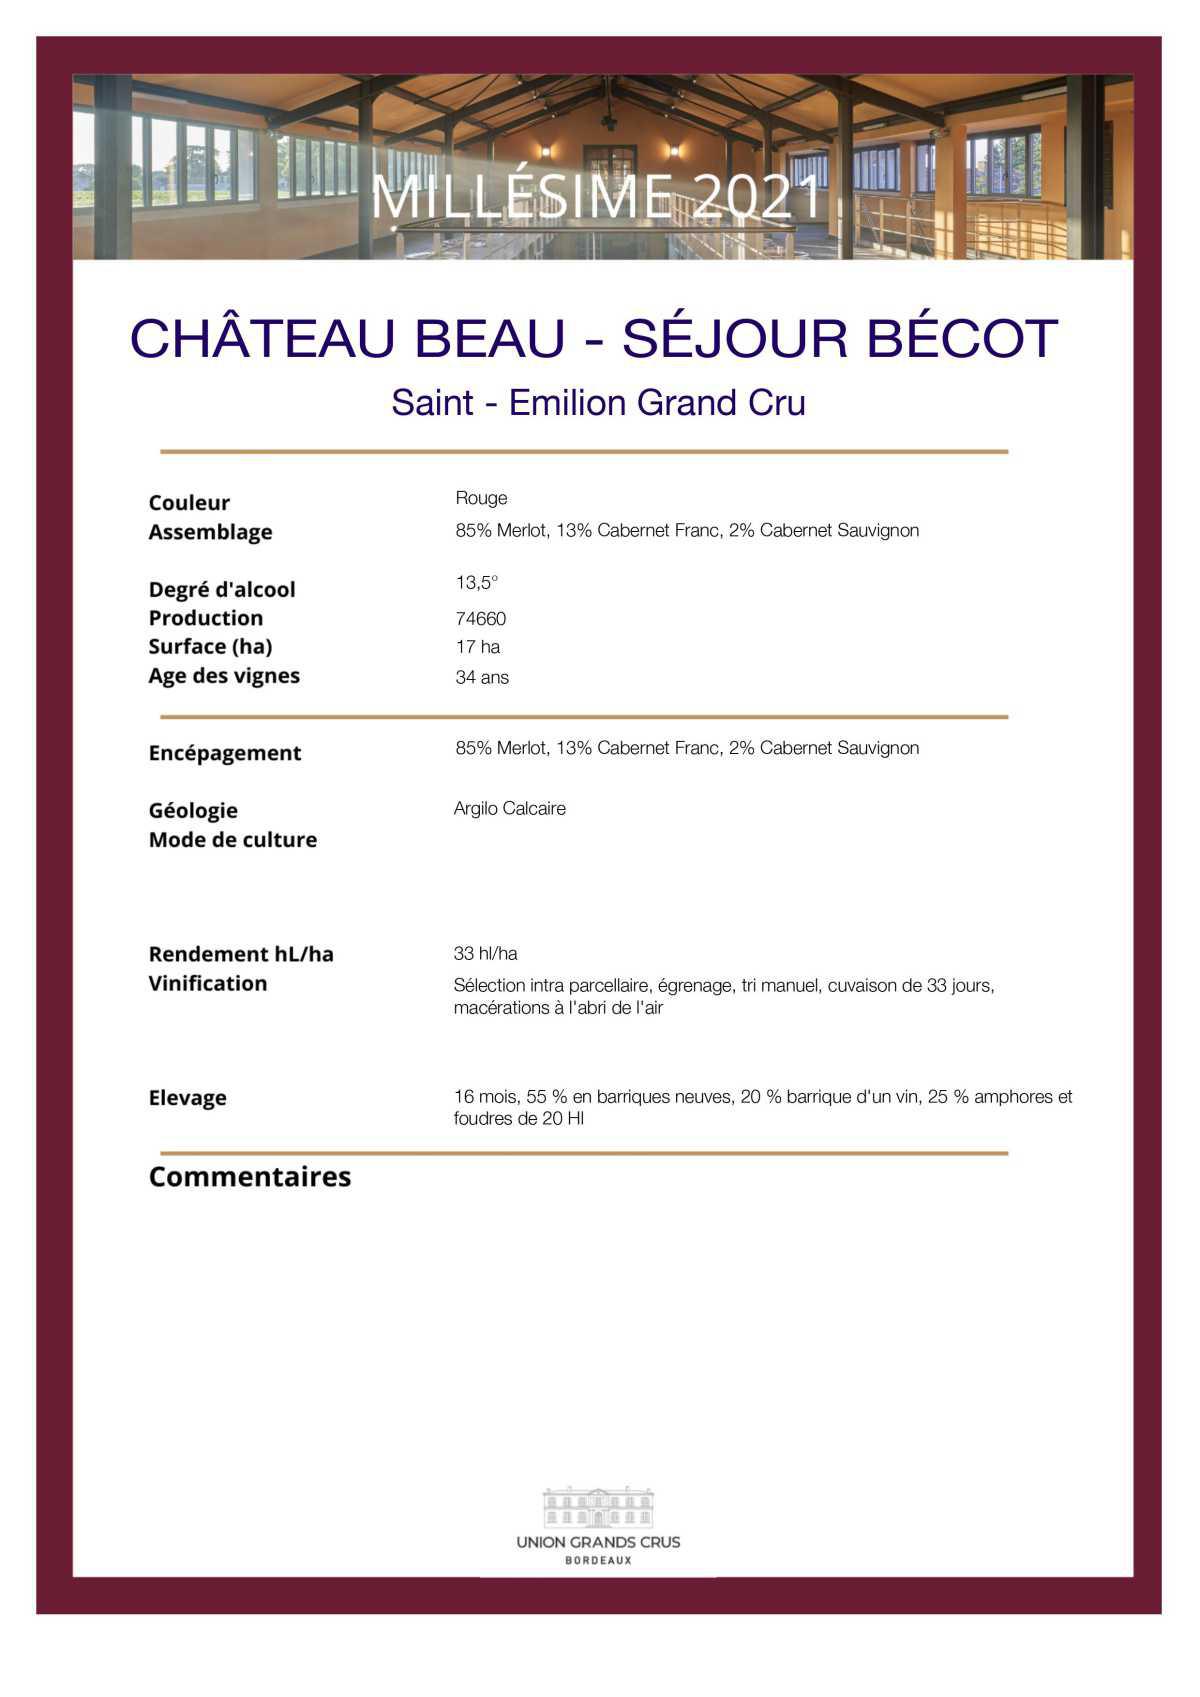 Château Beau - Séjour Bécot